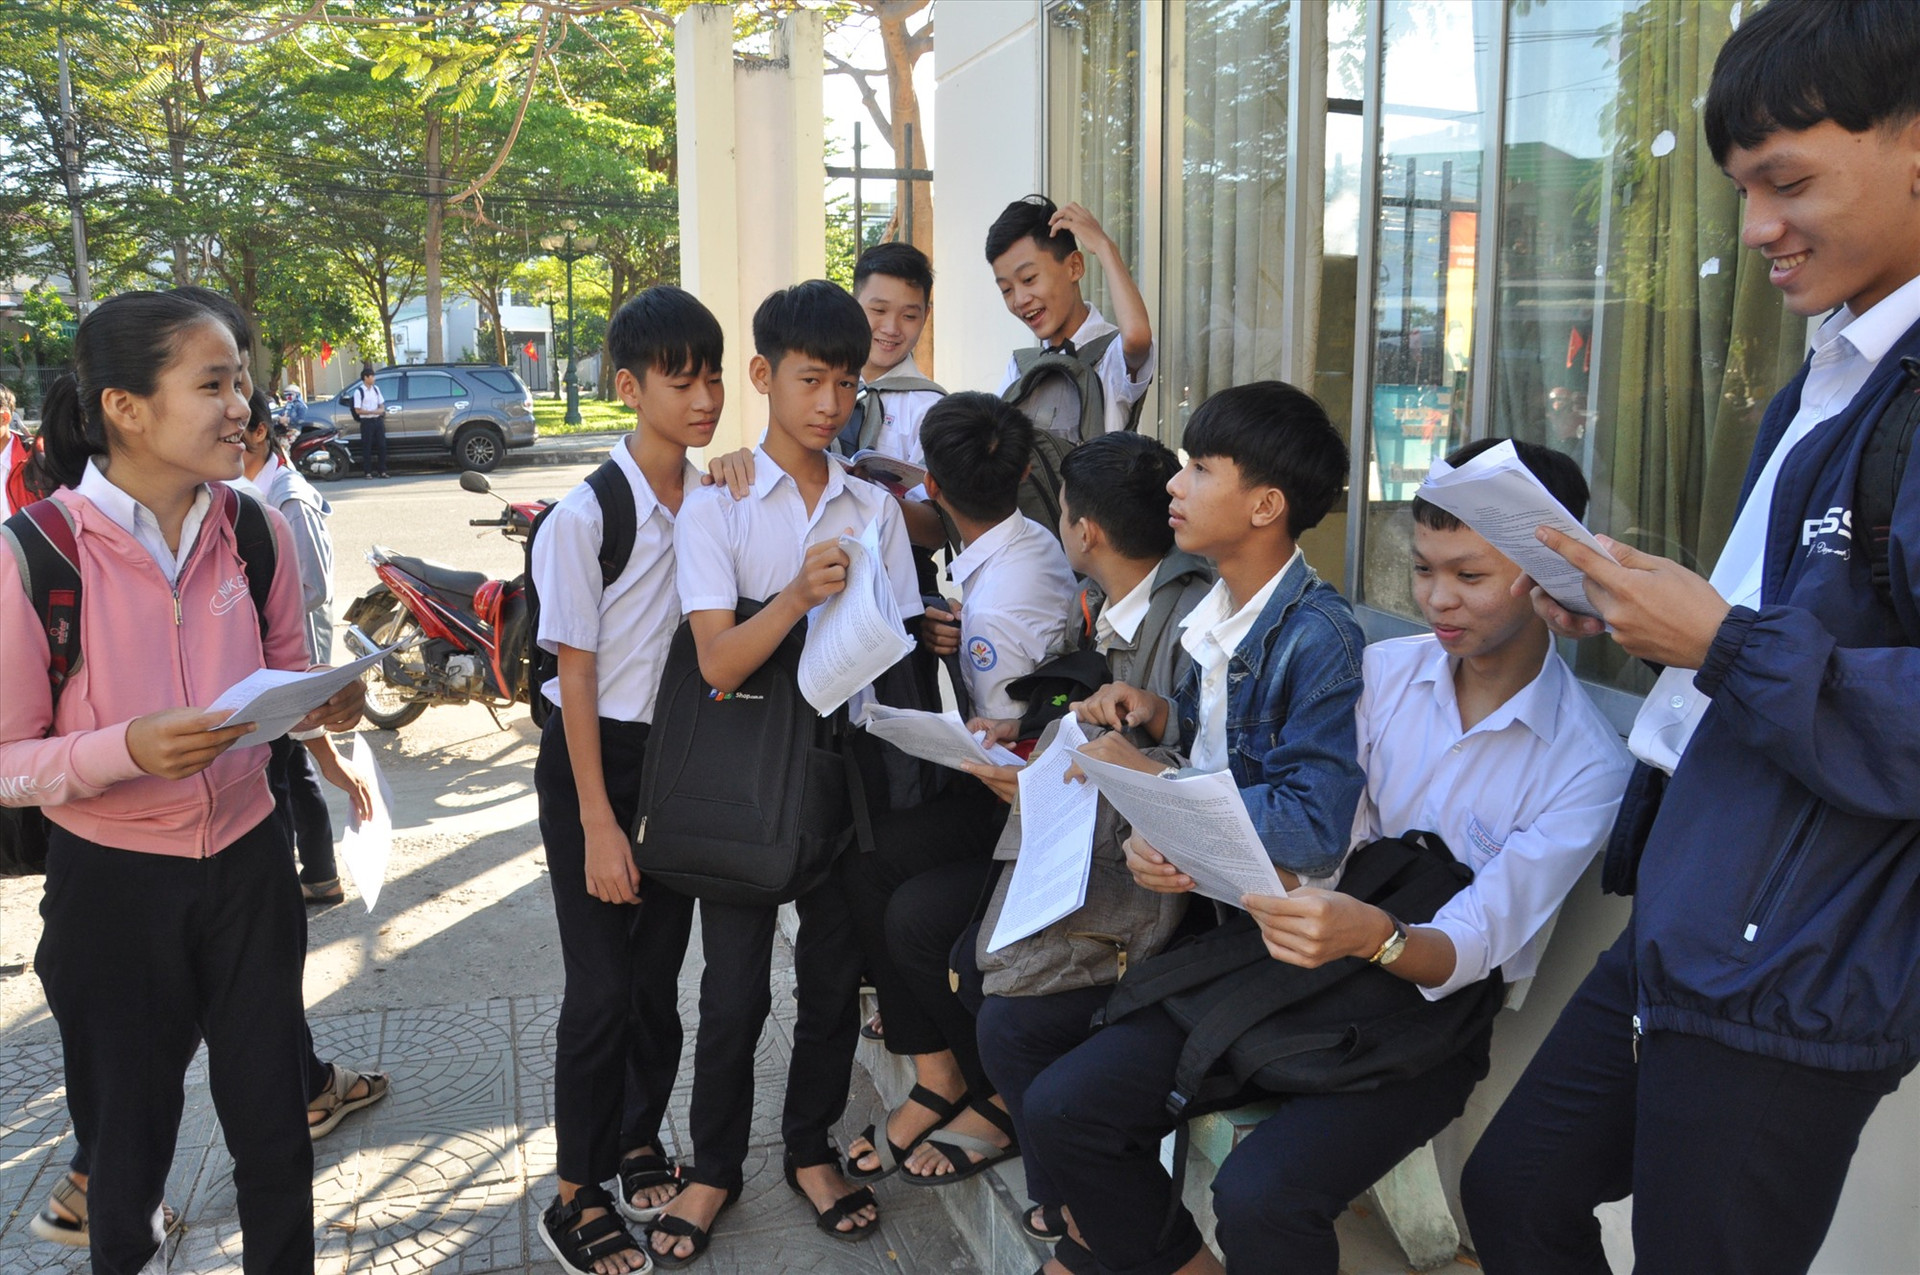 Sự tự tin của các thí sinh là học sinh Trường THCS Lê Quý Đôn -đây được xem là “ngôi trường chuyên bậc THCS” của huyện Phú Ninh. Năm nay, trường có hơn 70 học sinh dự thi lớp 10 chuyên. Ảnh: X.P